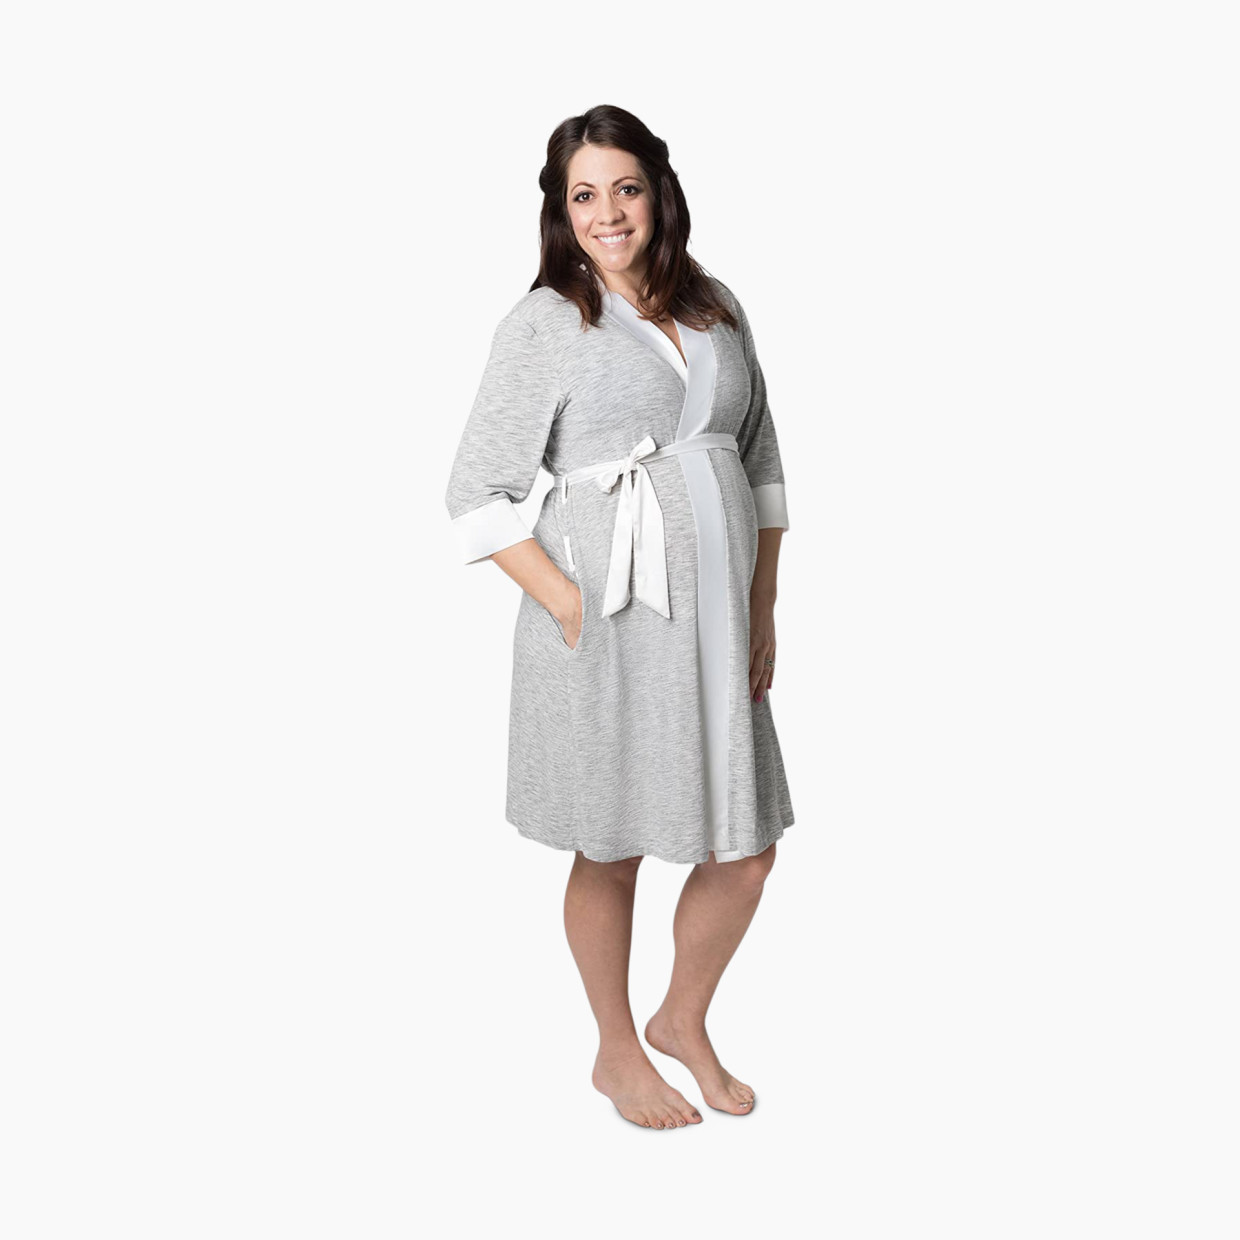 Kindred Bravely Emmaline Maternity & Nursing Robe - Grey, Large/X-Large